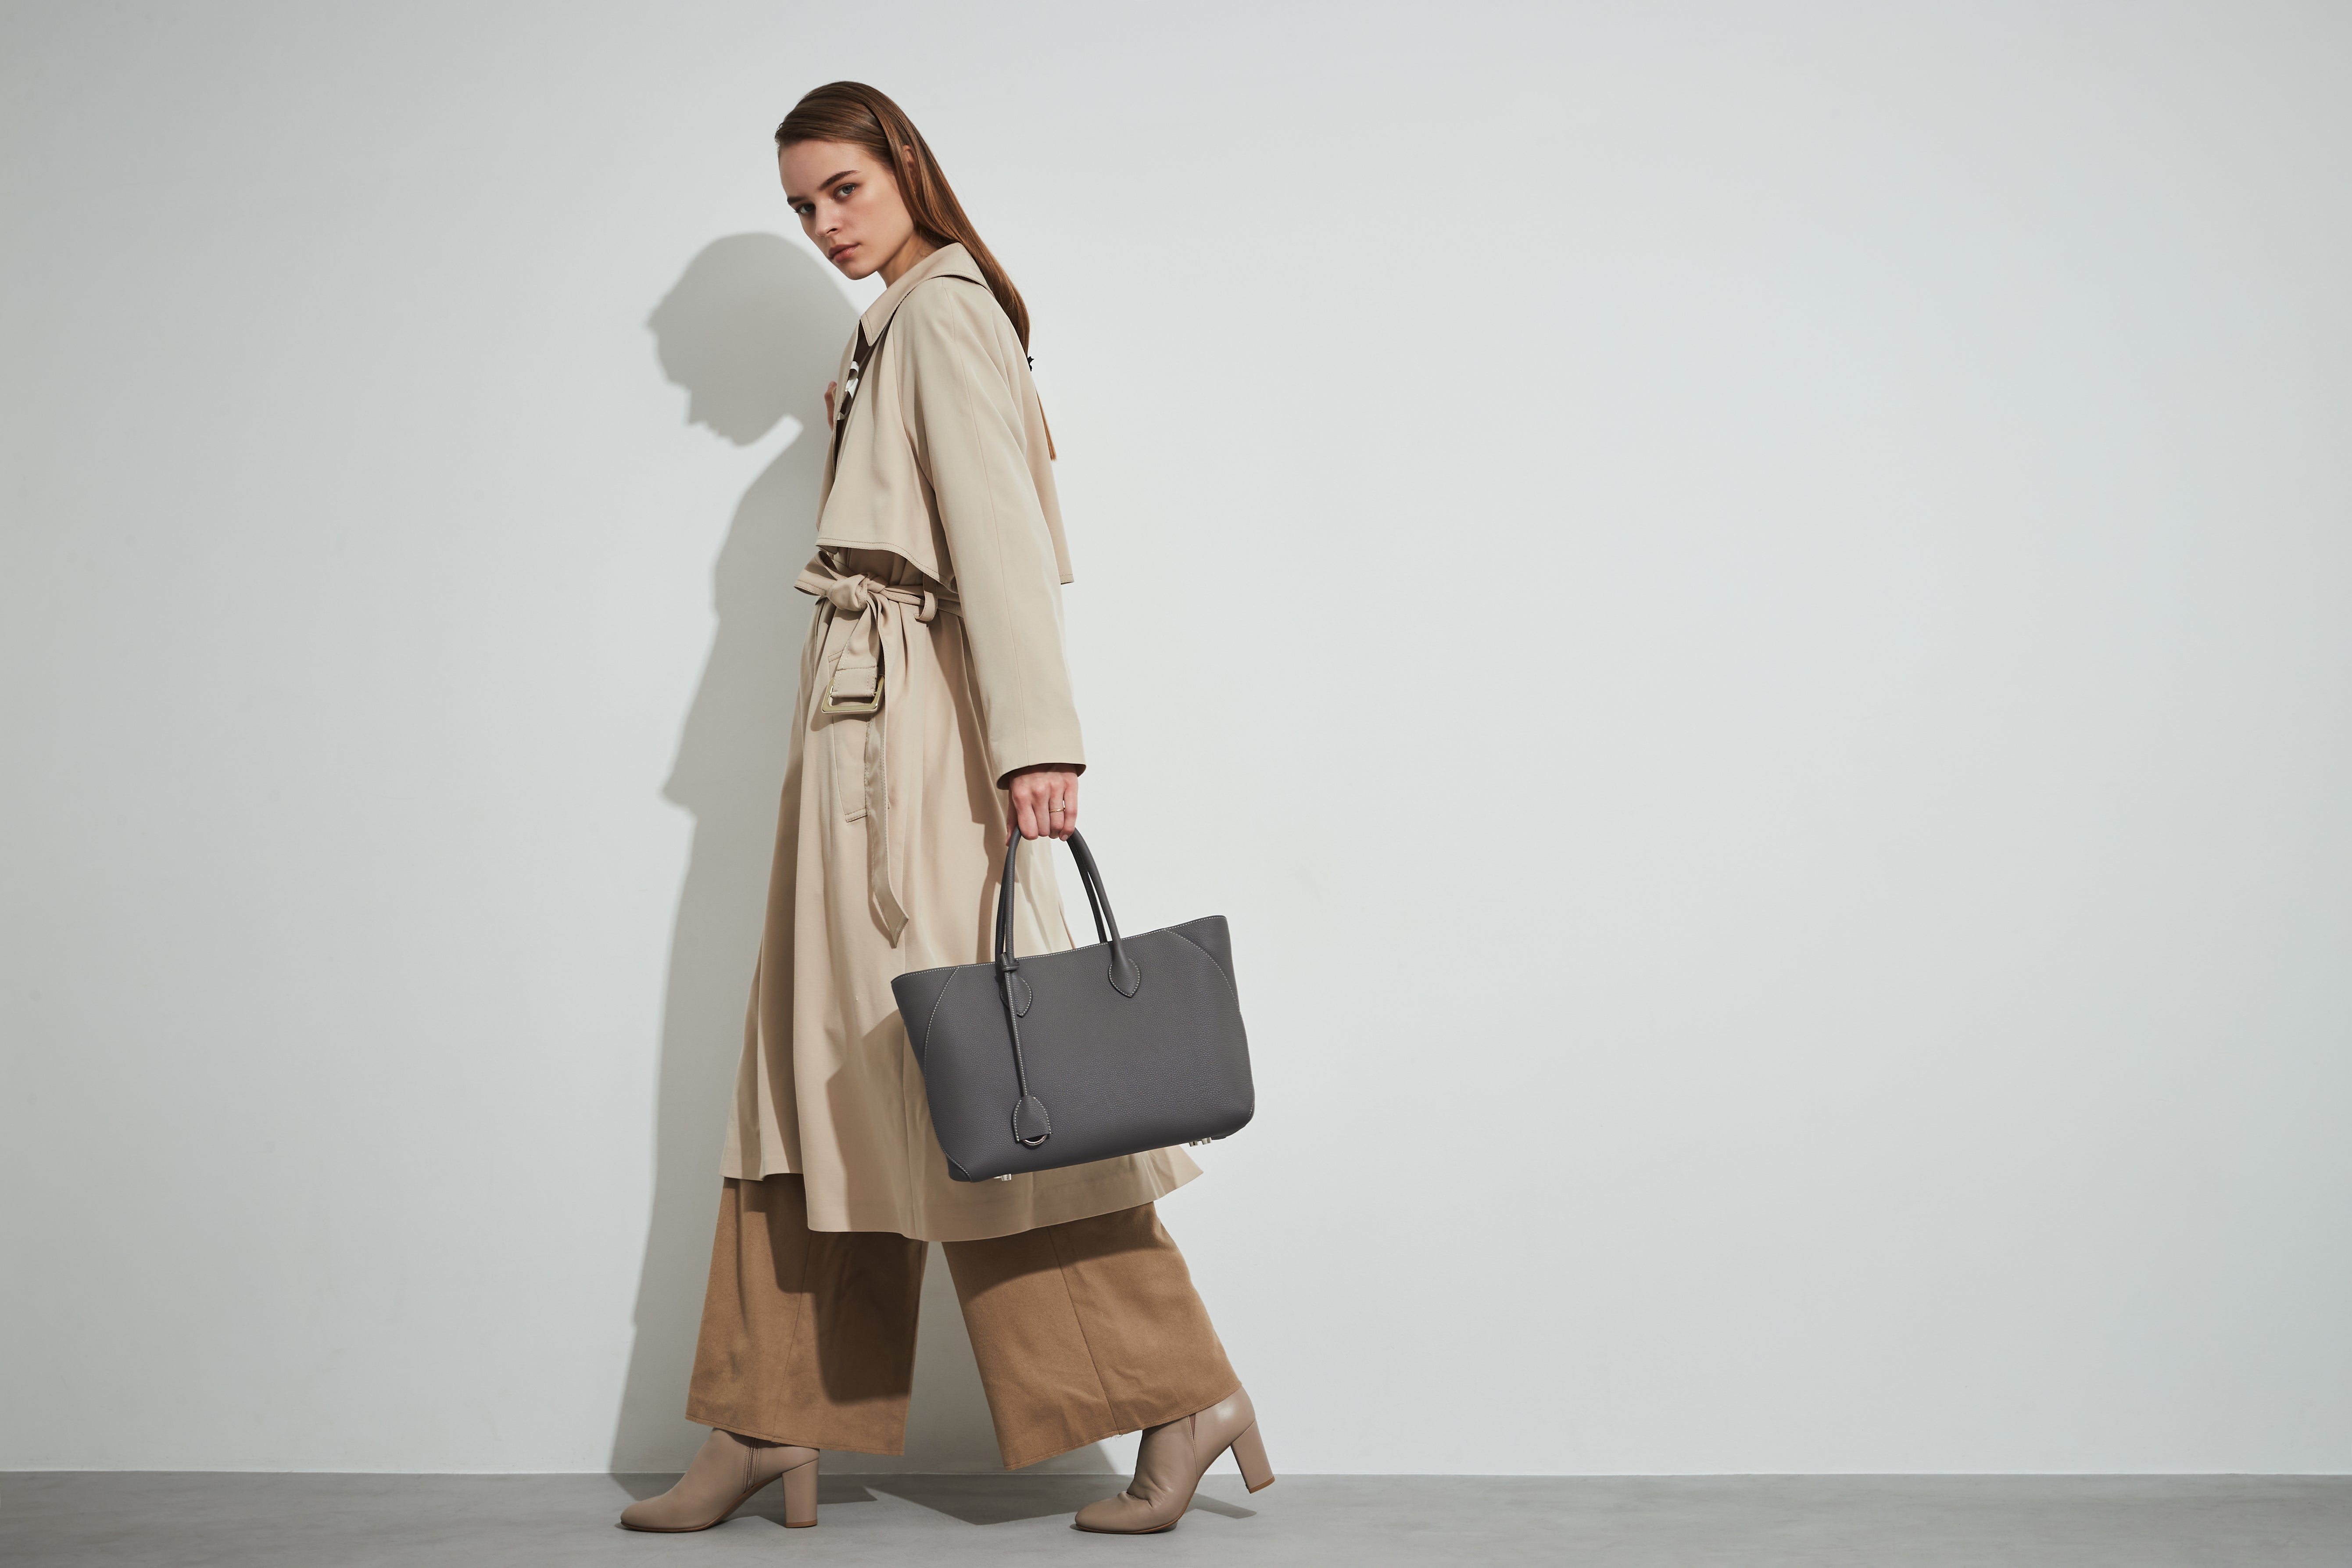 Elegantna ženska v trenčkotu nosi torbo Mia Tote Bag Medium blagovne znamke BONAVENTURA, ki je dovolj prostorna za računalnik Macbook in je idealna za vsakdanjo uporabo.